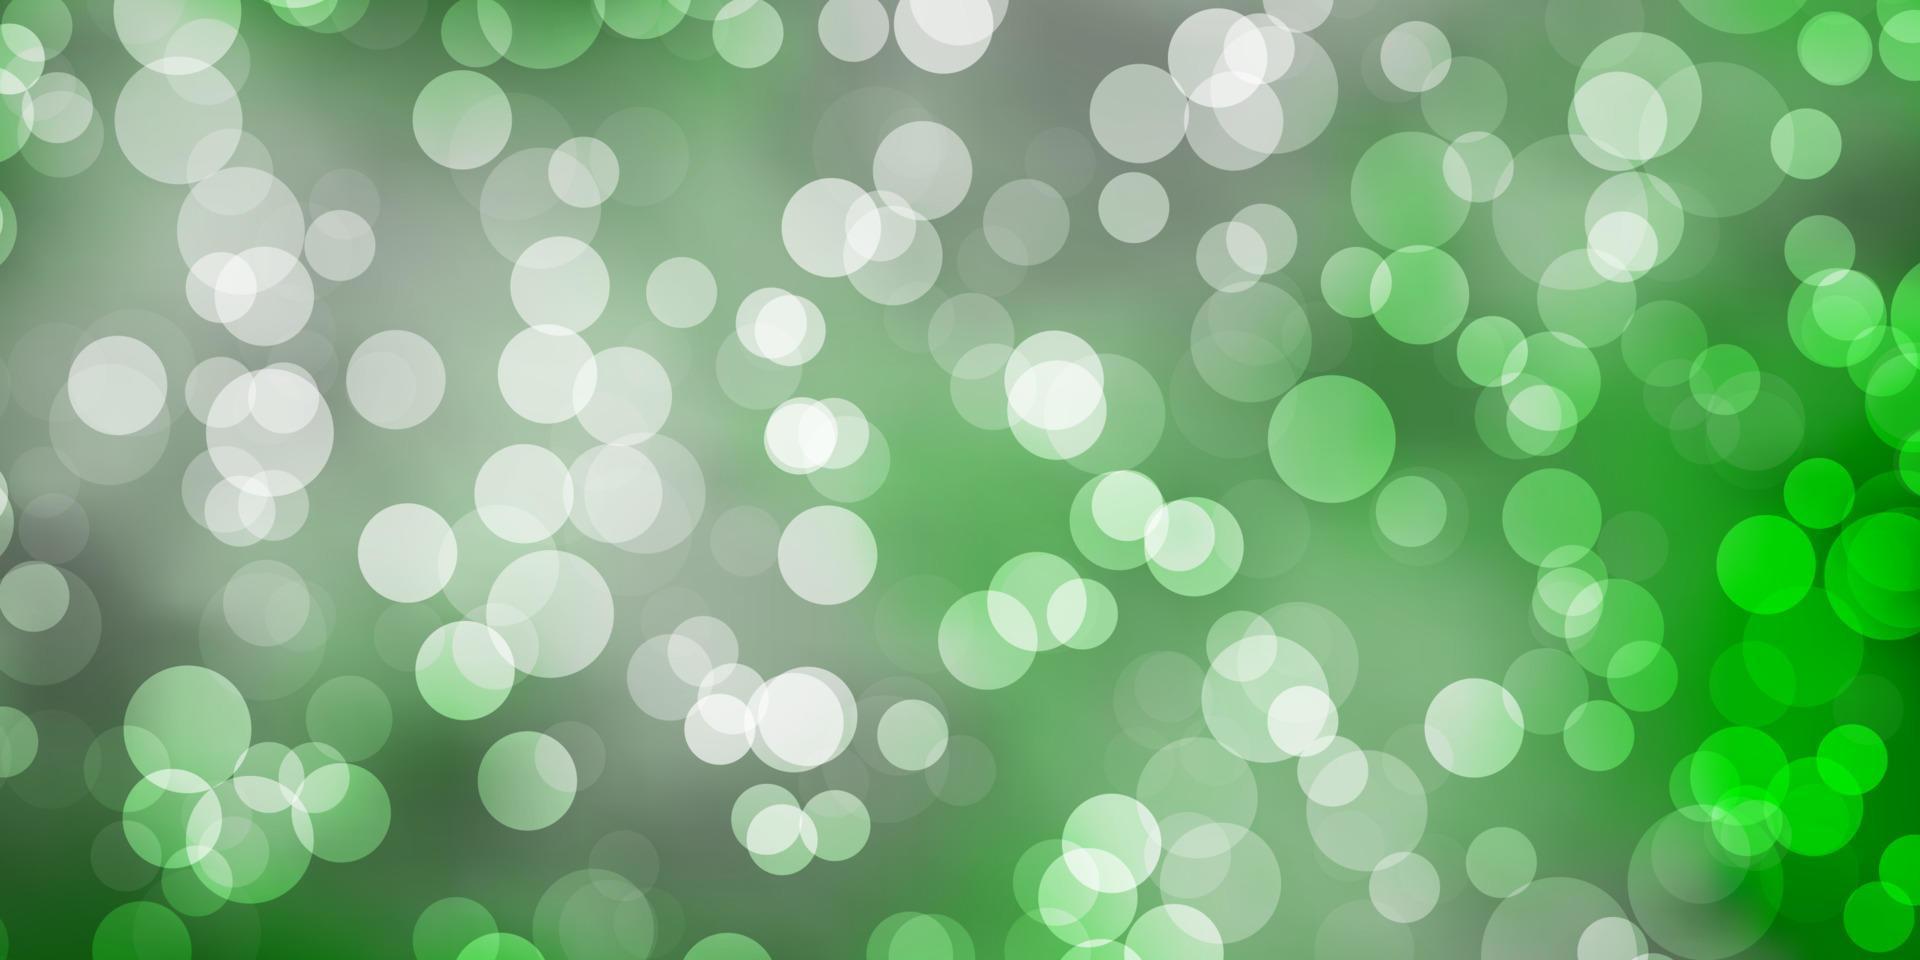 ljusgrön vektorlayout med cirkelformer. vektor